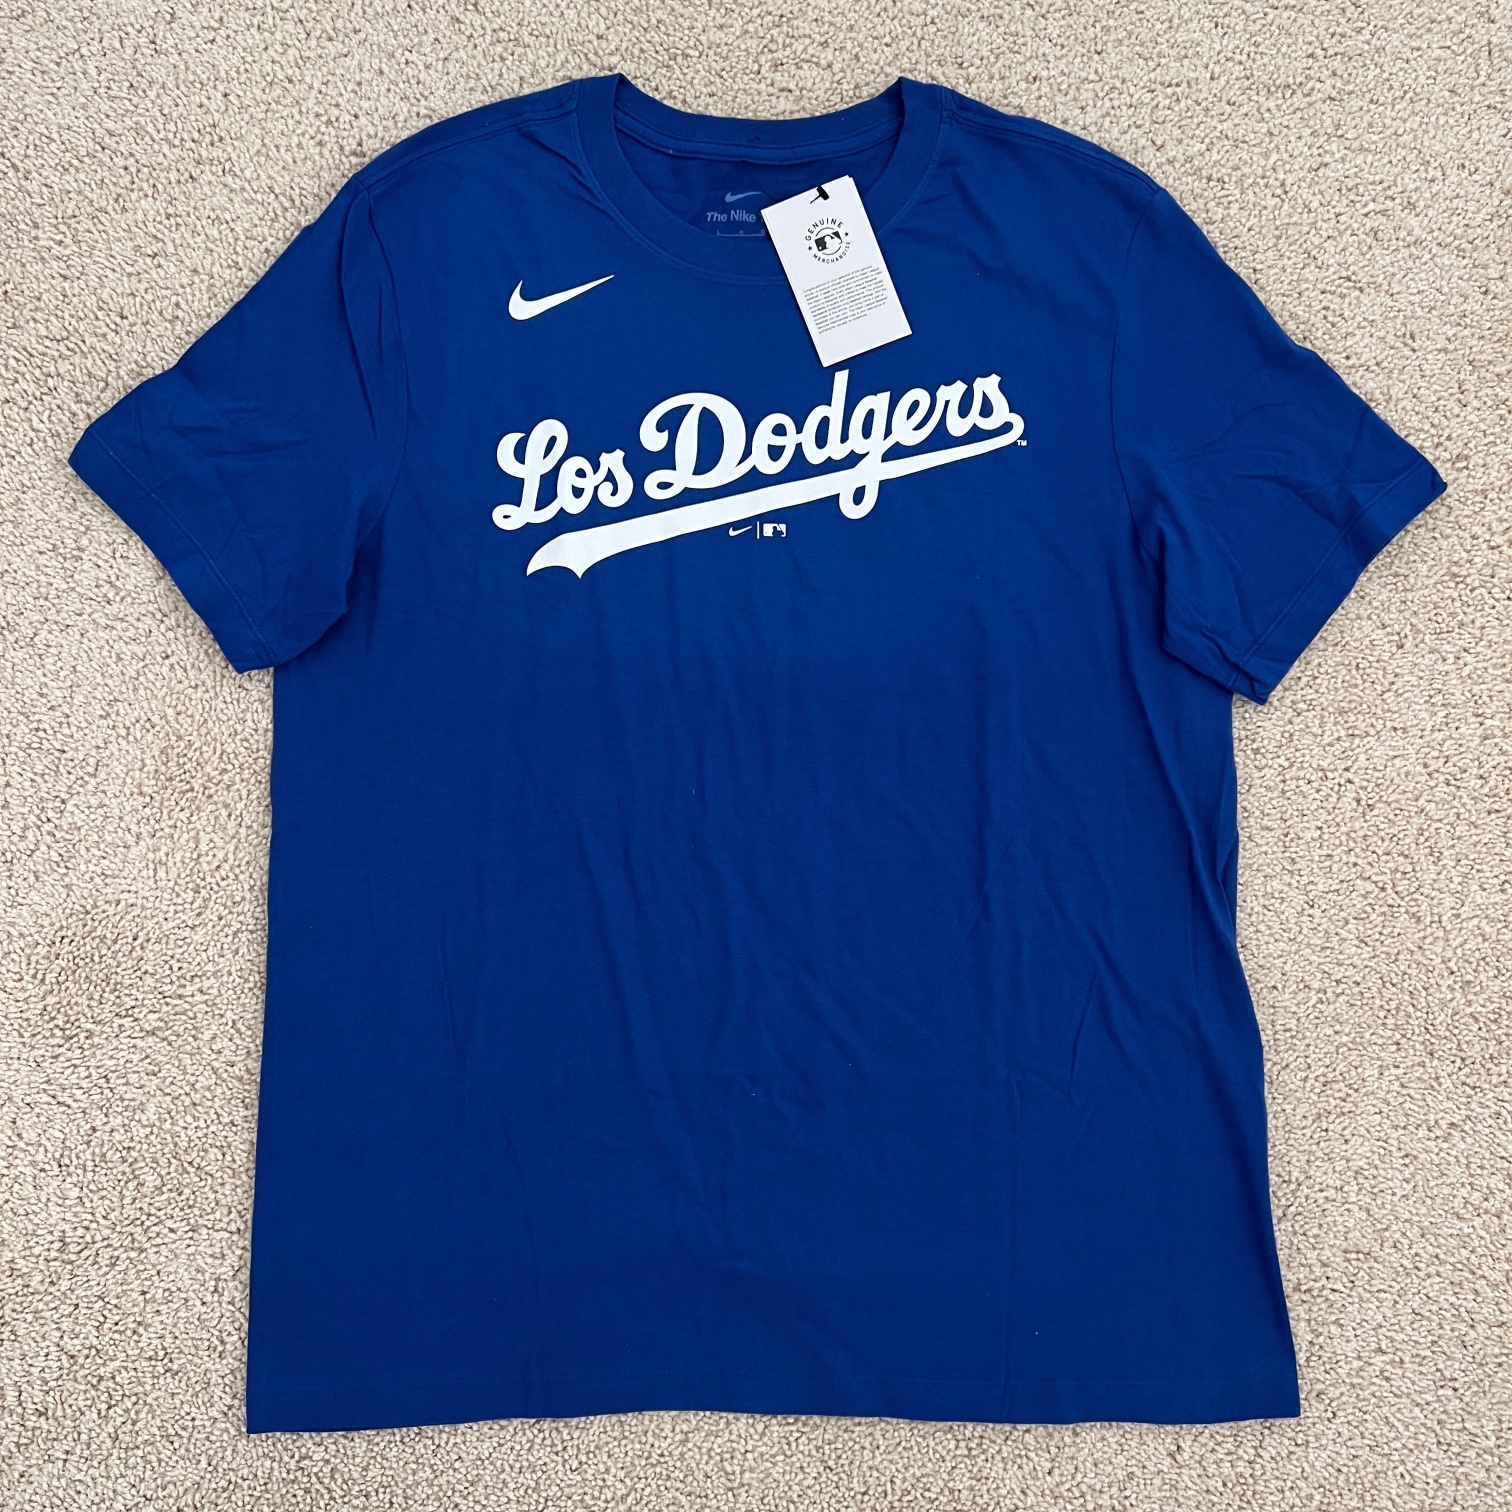 Nike Los Angeles Dodgers Nike Team City Connect T-Shirt Blue - Men's Size L